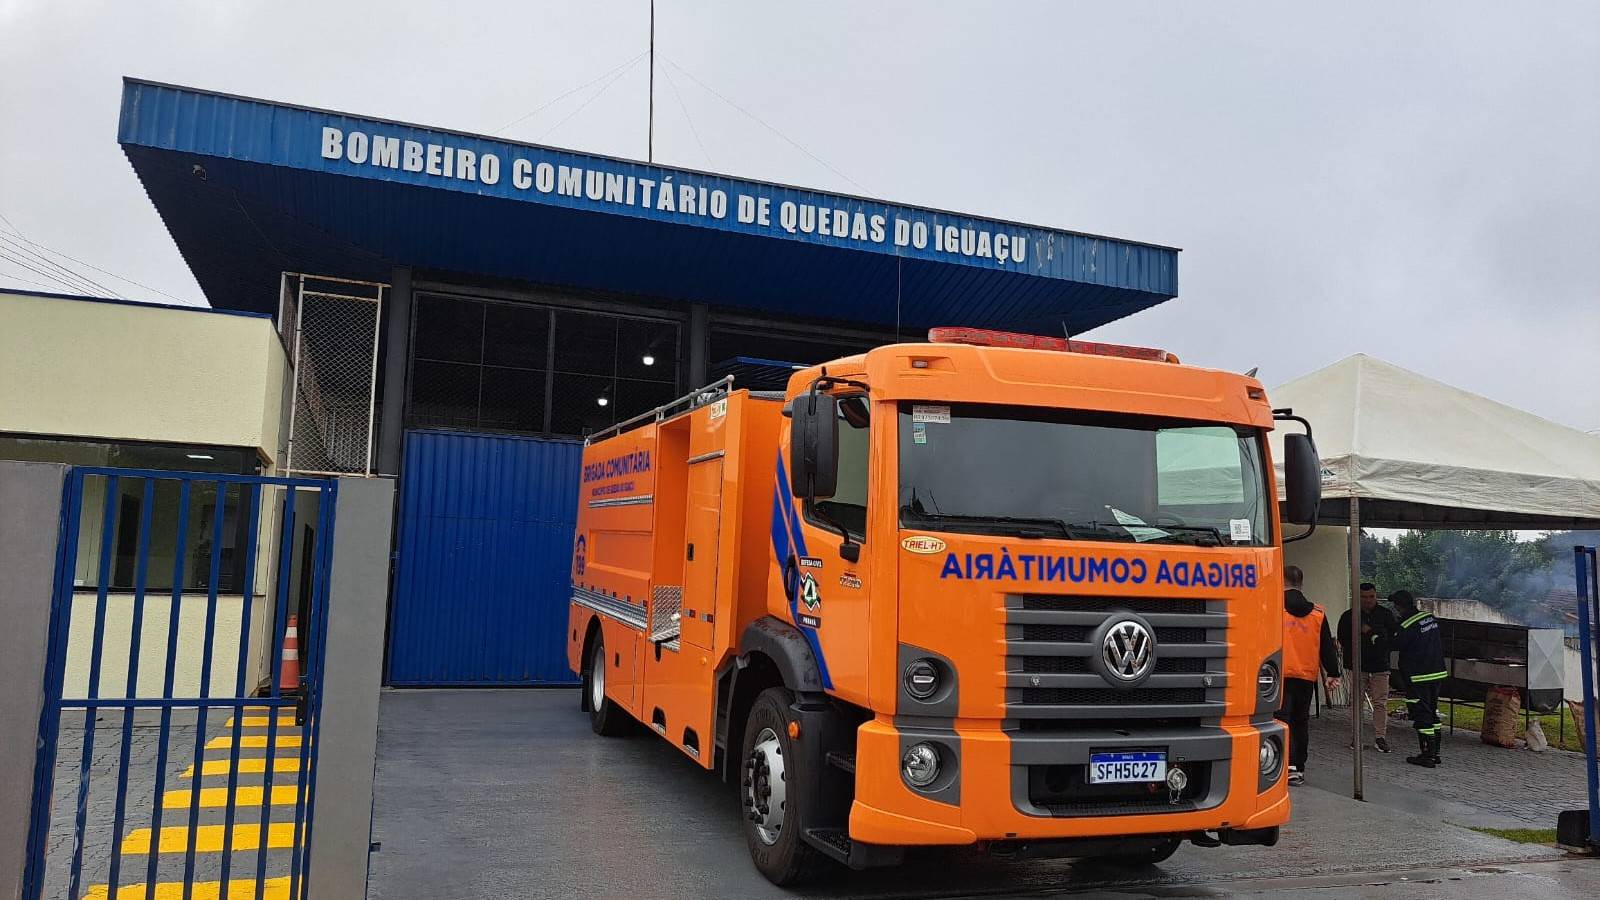 Brigada Comunitária de Quedas do Iguaçu recebe reforço com novo Caminhão ABTR e reforma do posto